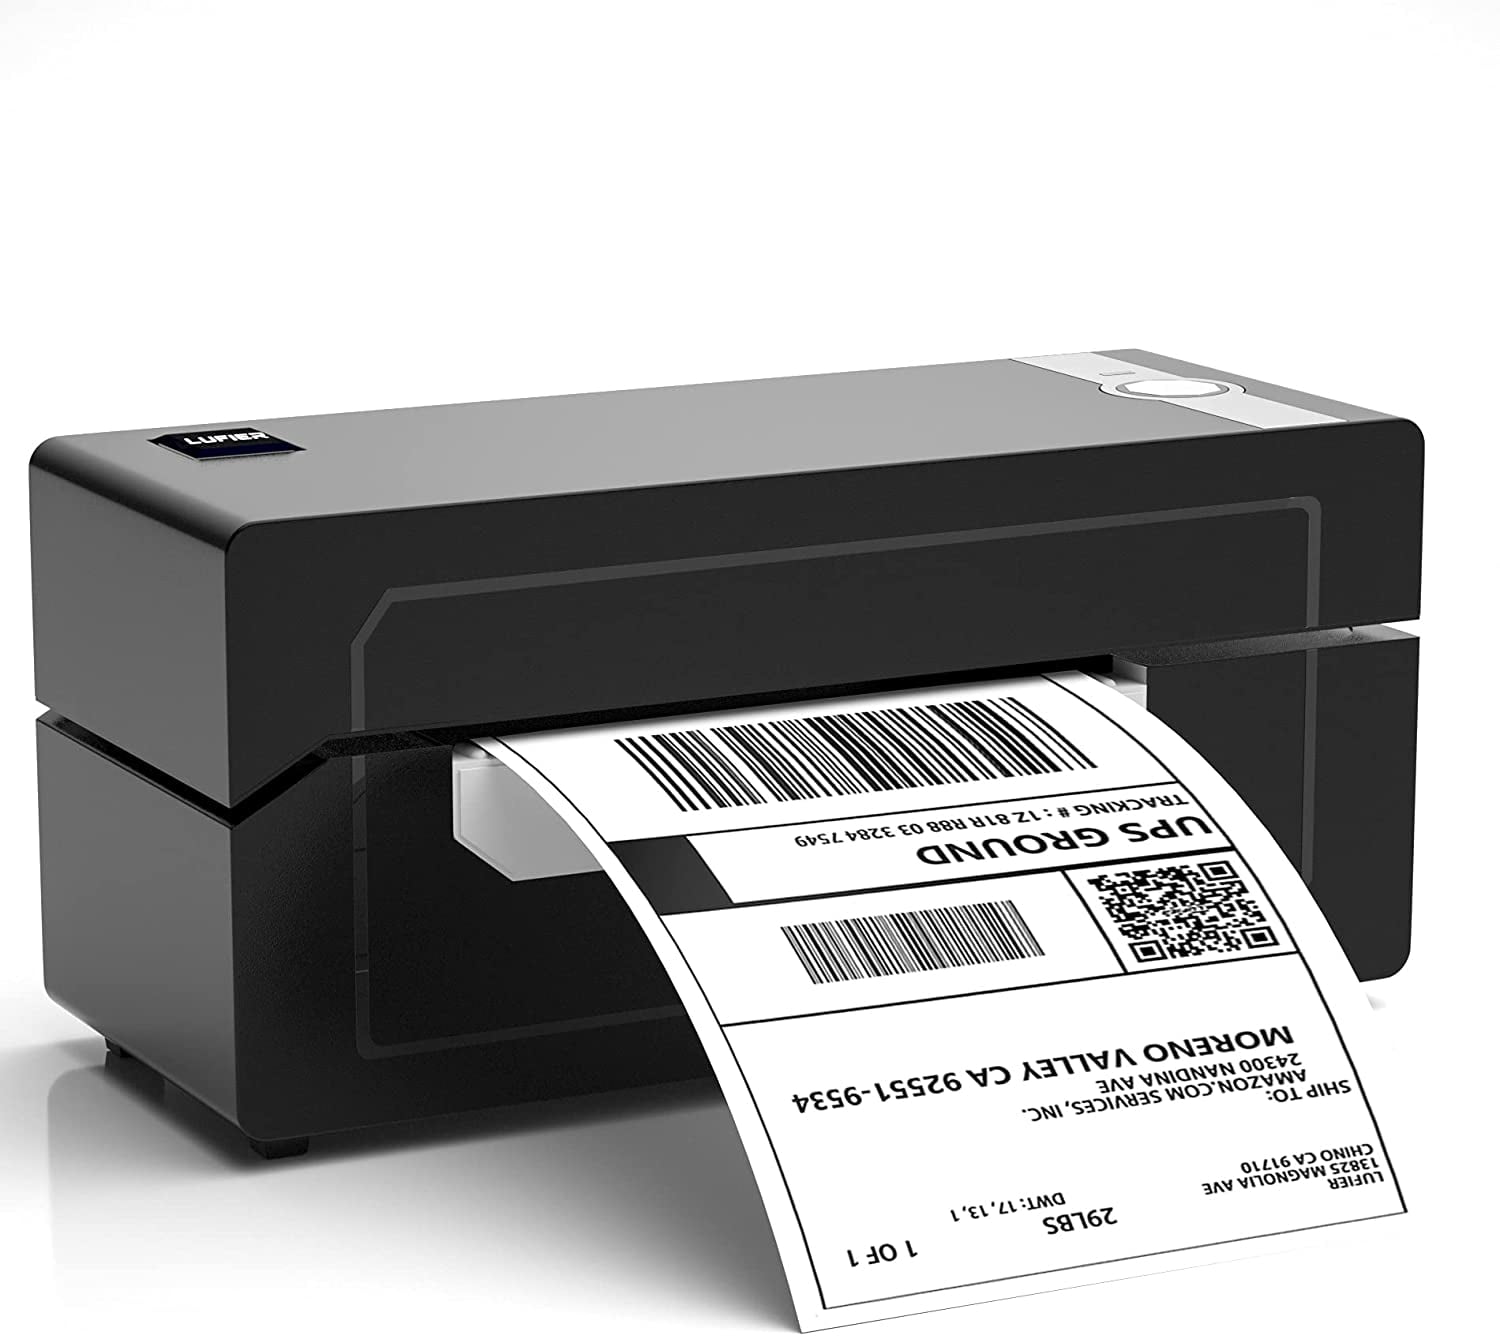 Etsy Thermal Label Printer USPS DHL Ebay UPS Shopify Pink Shipping Label Printer 4x6 Thermal Label Maker Compatible with FedEx Commercial Direct Desktop Label Printer 